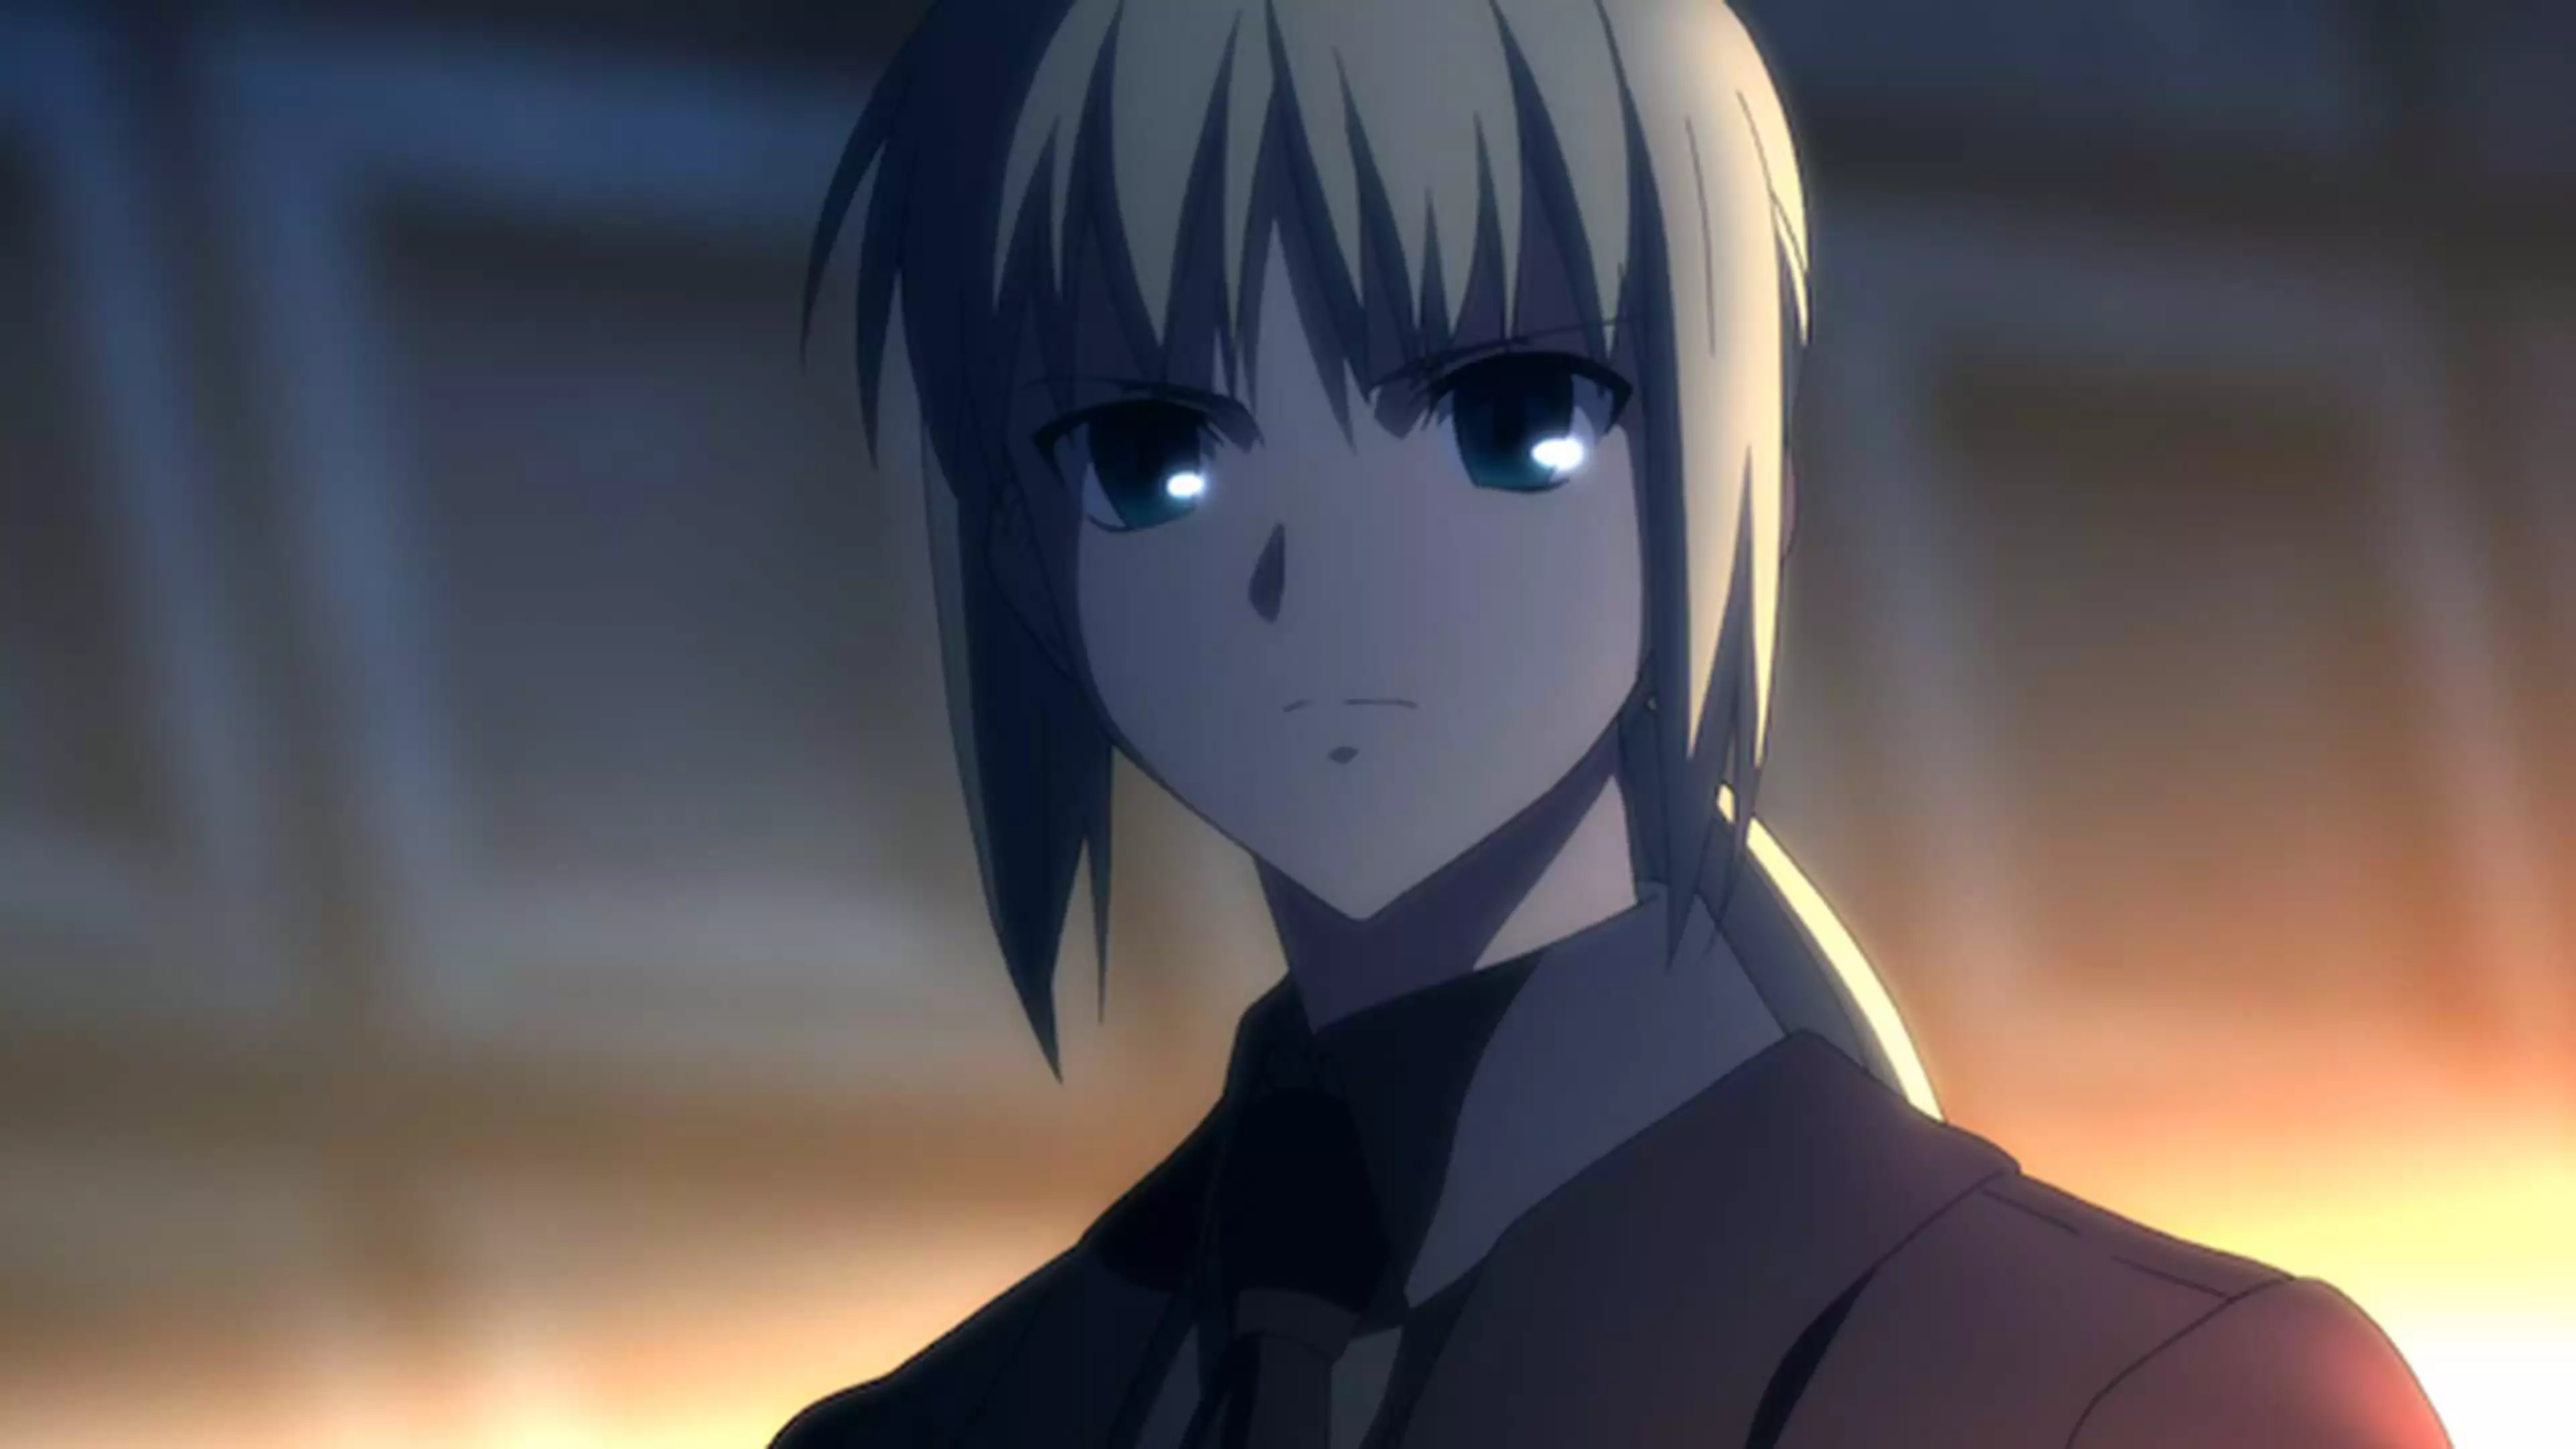 Fate Zero 第六話 謀略の夜 アニメ 2011年 の動画視聴 あらすじ U Next